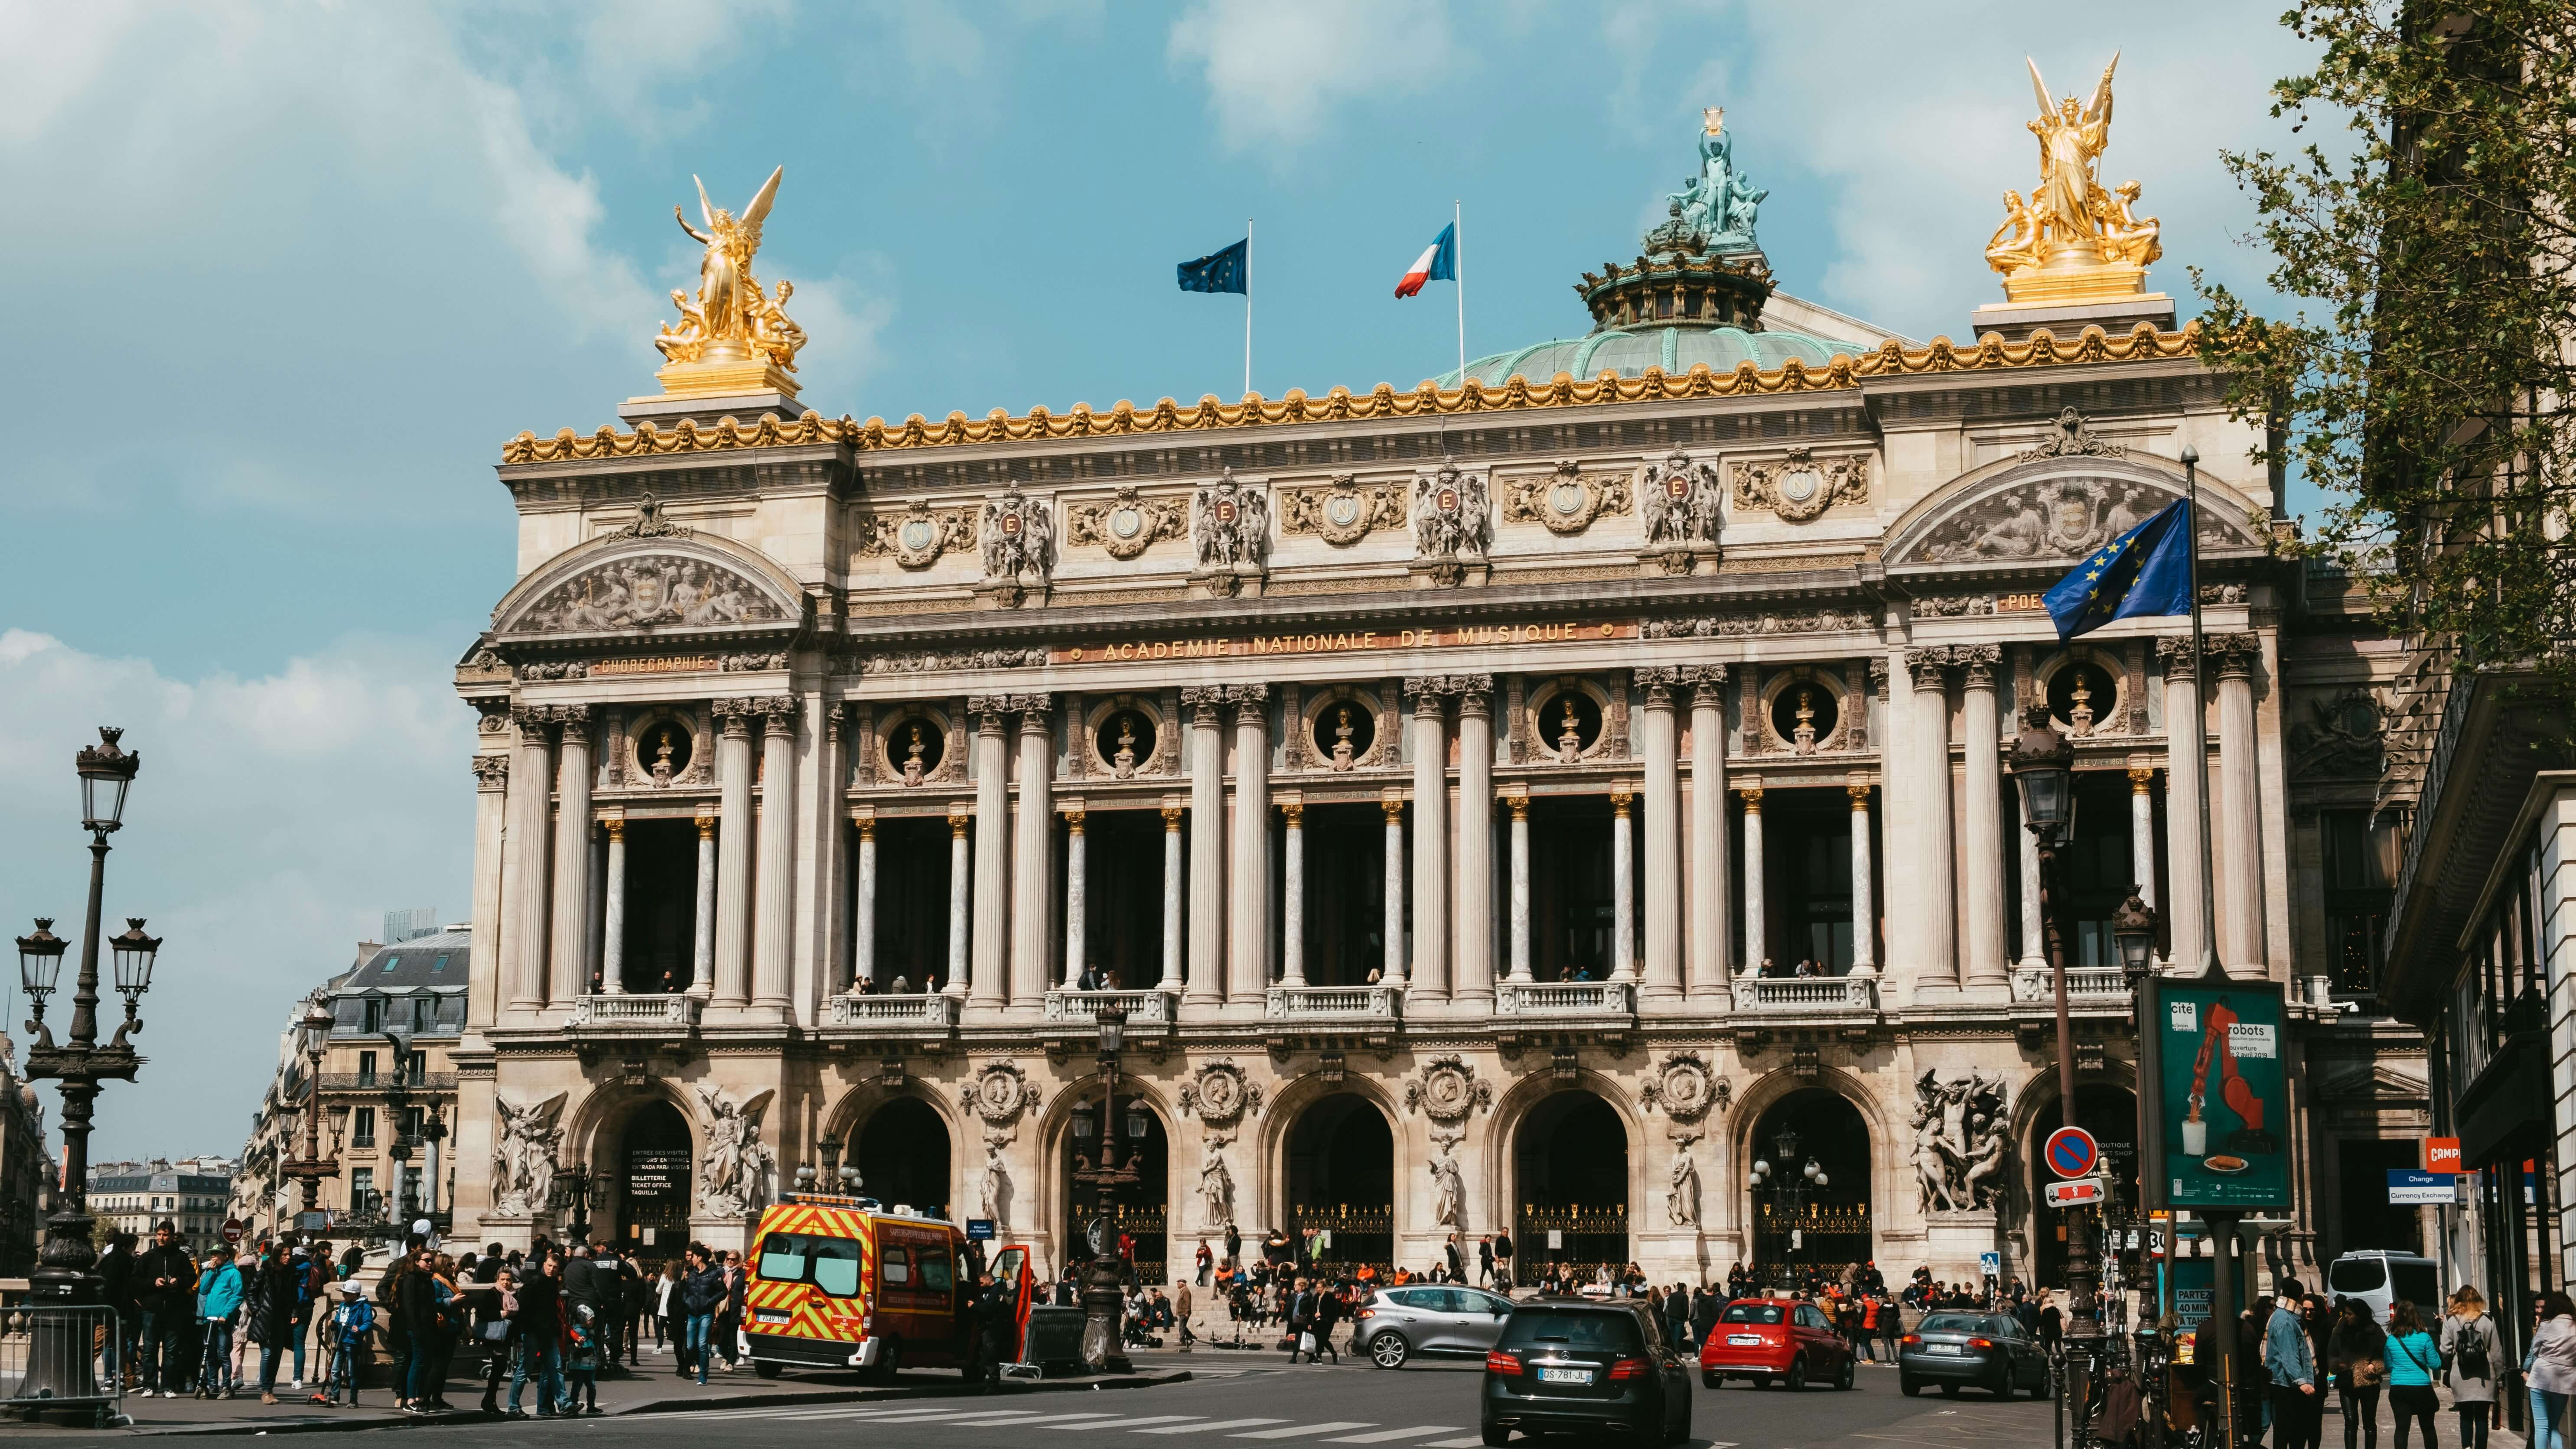 Palais Garnier: Place de l'Opéra, 9th district Paris